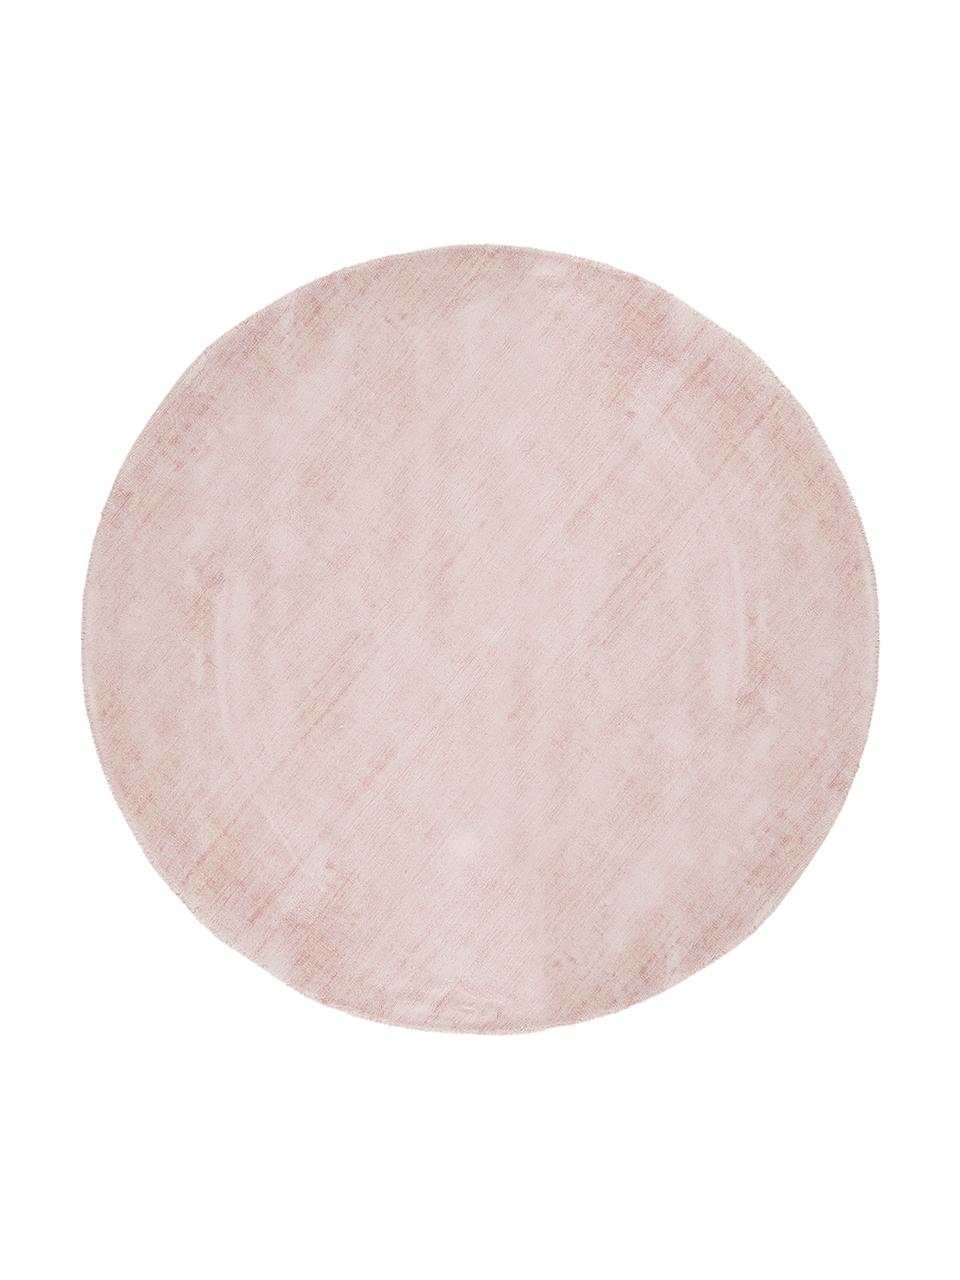 Rond handgeweven viscose vloerkleed Jane in roze, Onderzijde: 100% katoen, Roze, Ø 150 cm (maat M)